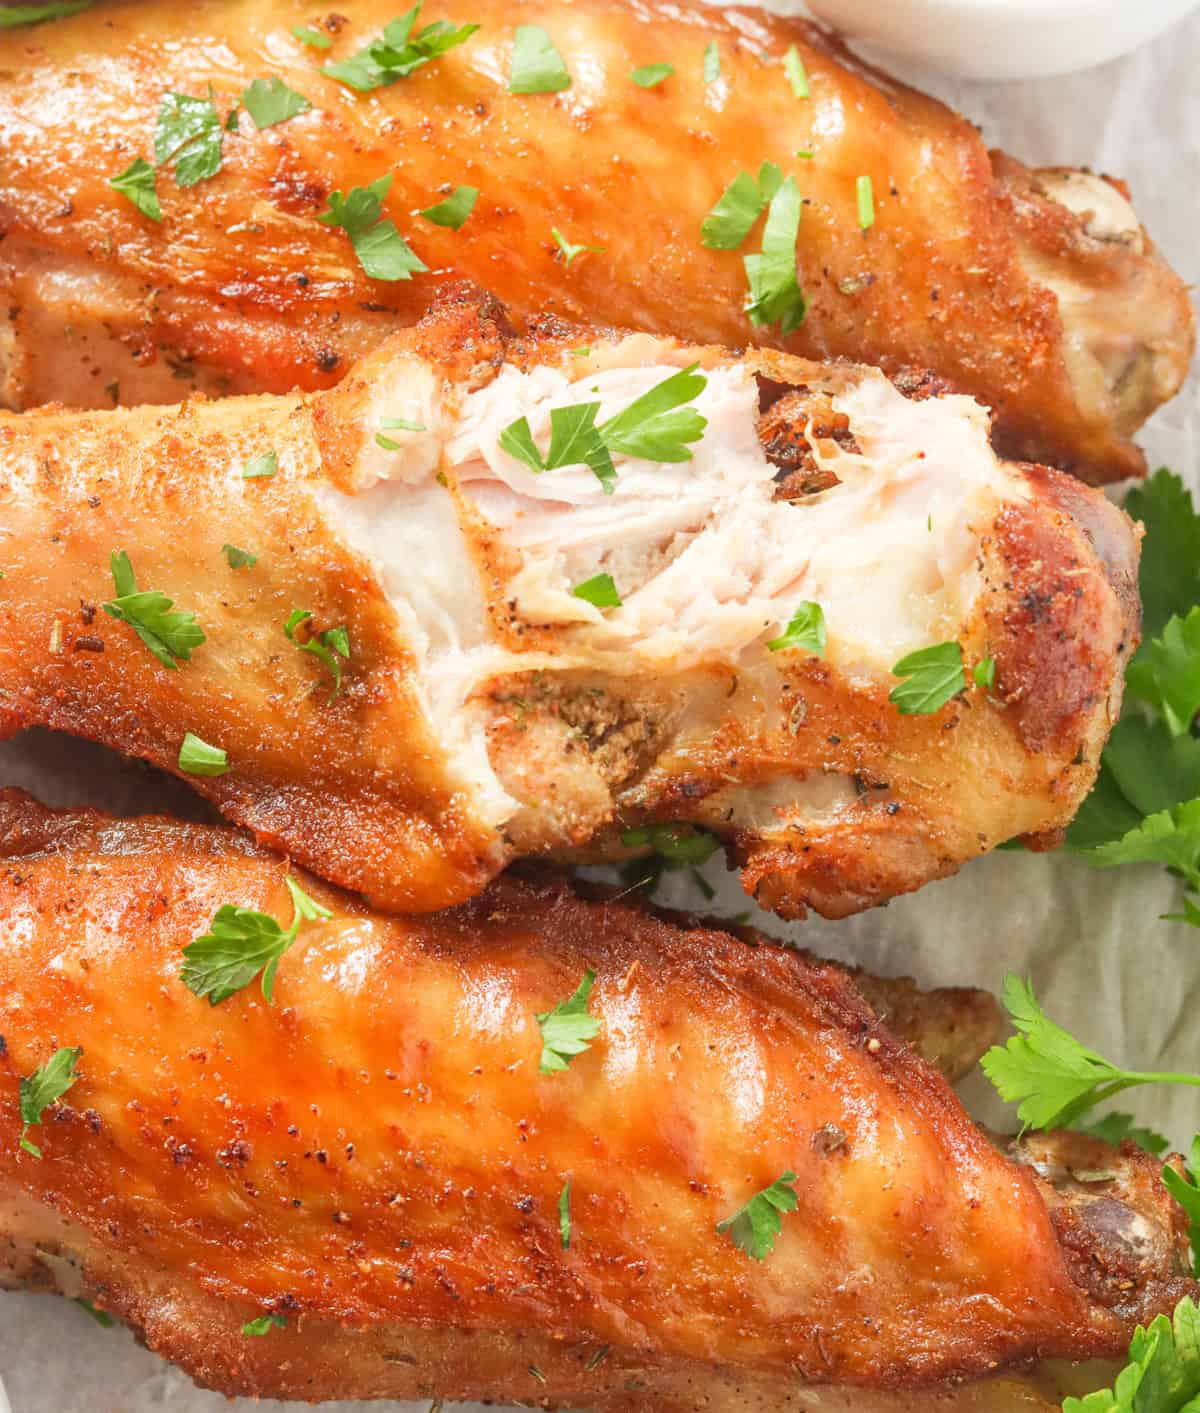 Enjoy Fried Turkey Wings